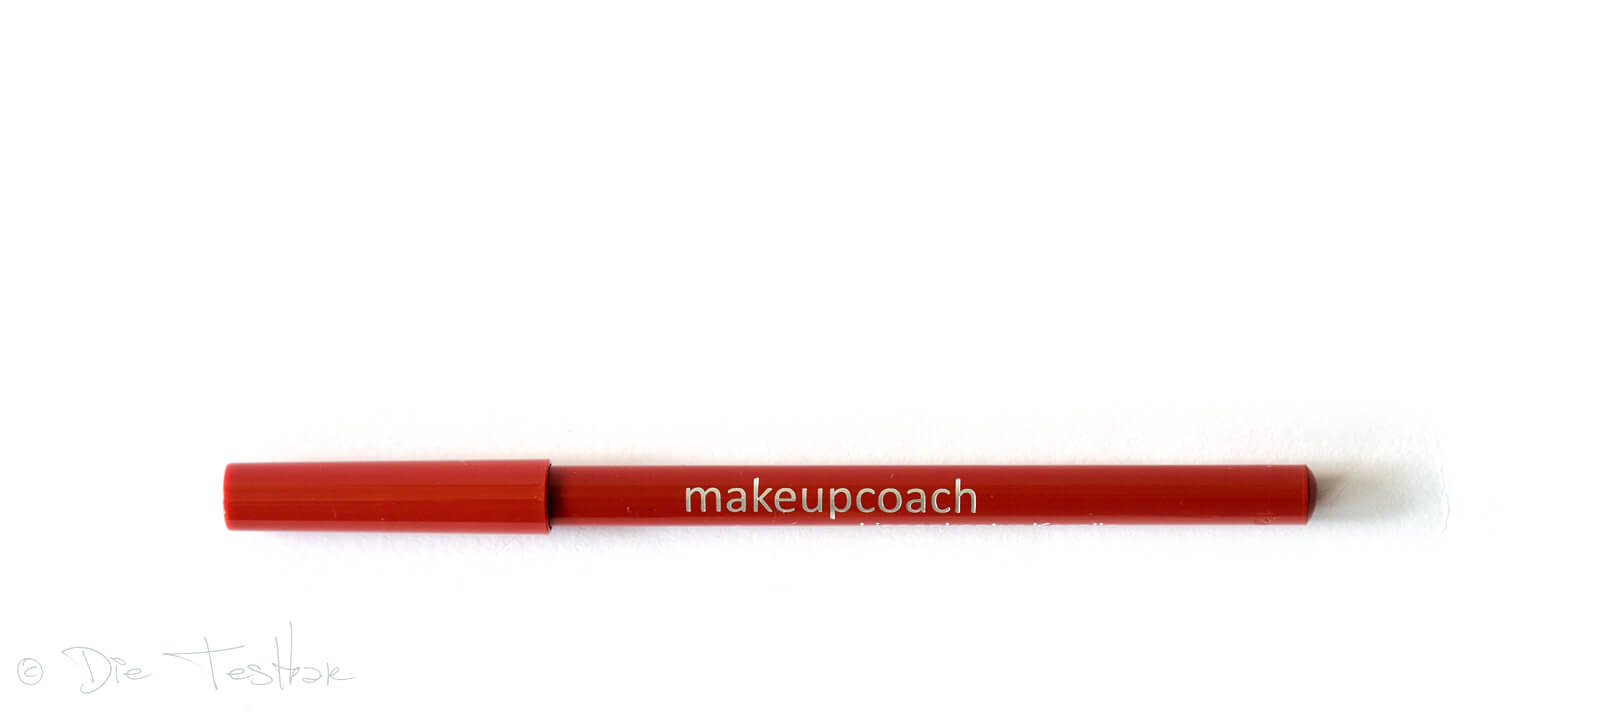 Für wunderschöne Lippen - Hochwertiges Lippen-Make-up vom makeupcoach 6